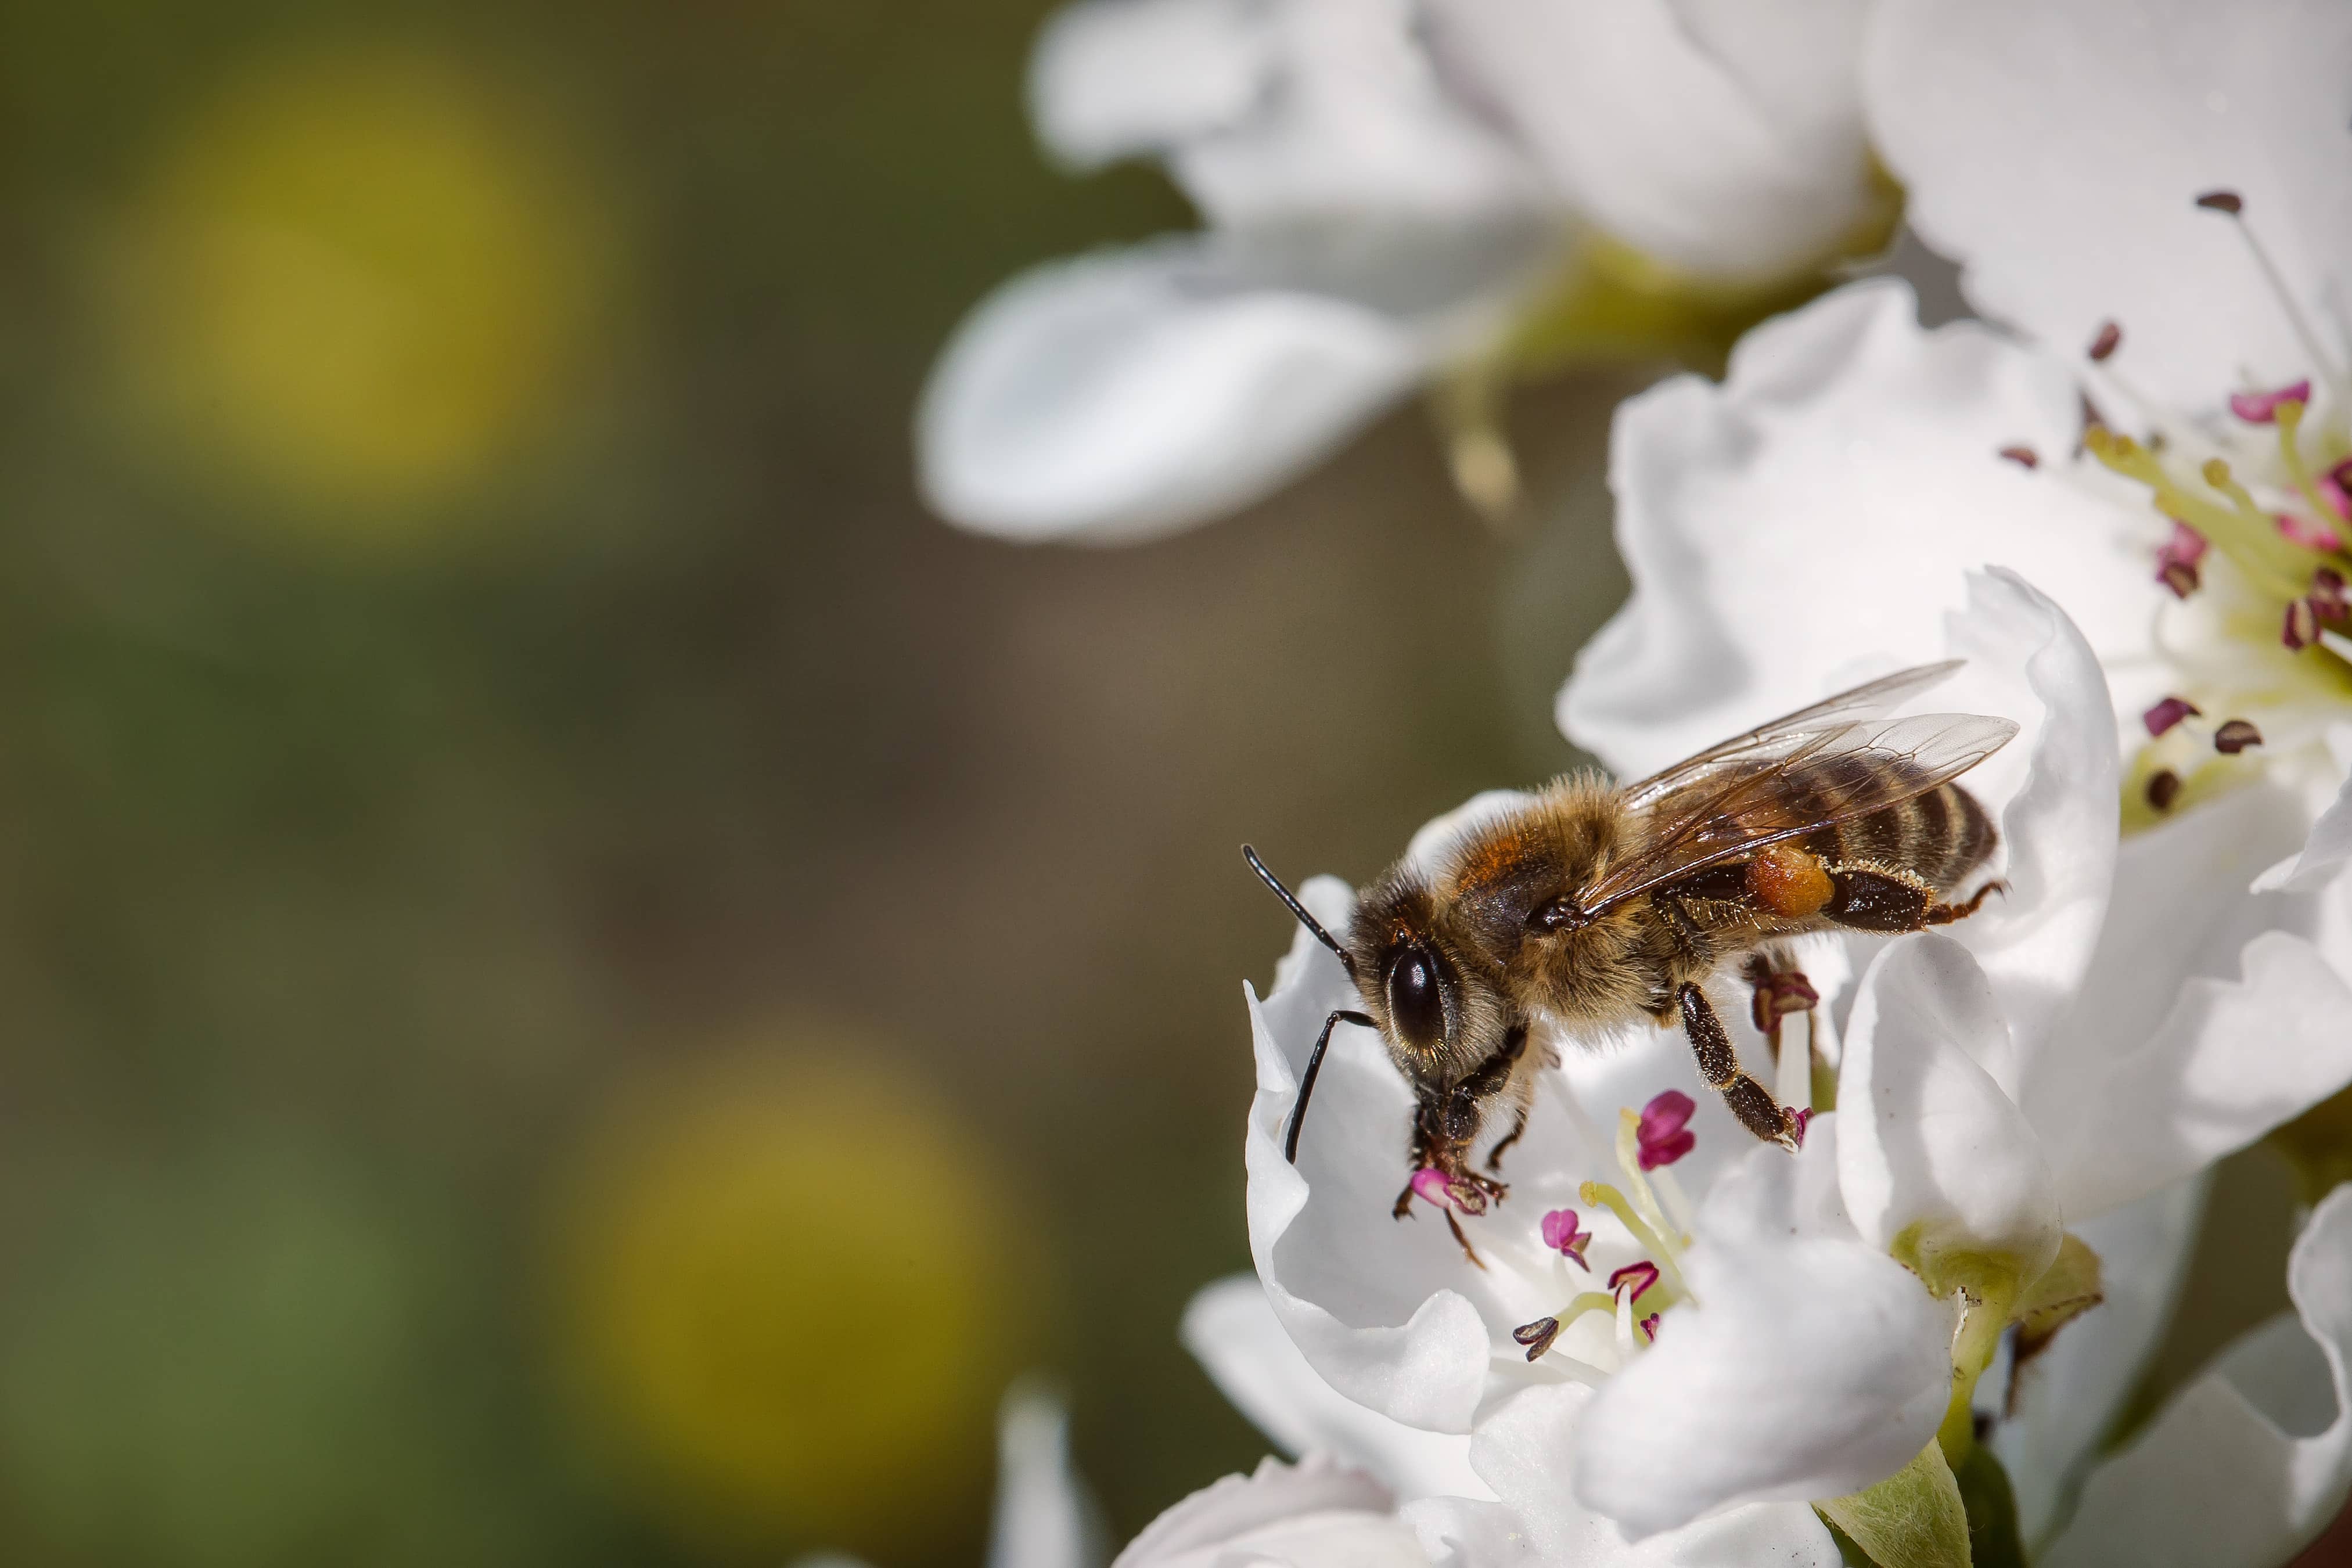 Foto gratis: ape, da vicino, Dettagli, peloso, Honeybee, insetto, Ali,  polline, pianta, primavera